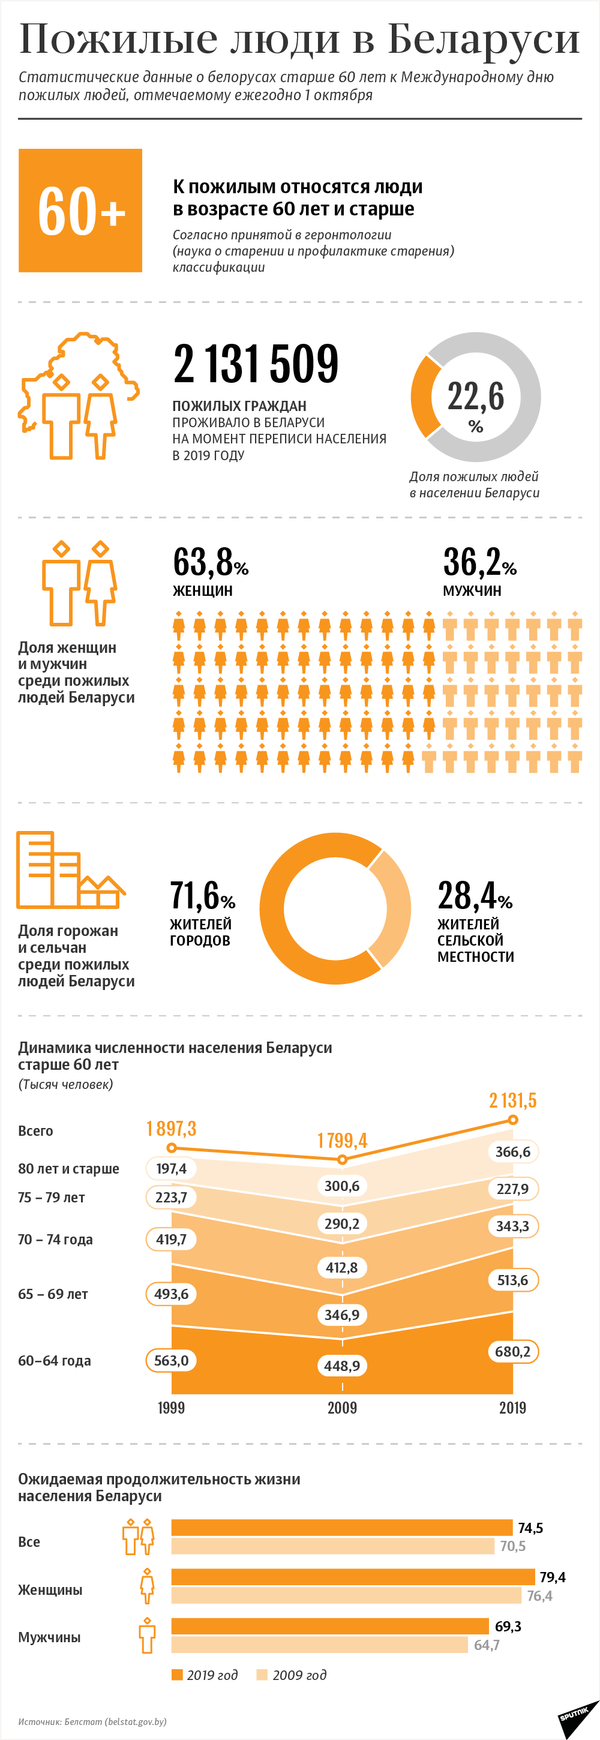 Пожилые люди в Беларуси: статистические данные - Sputnik Беларусь